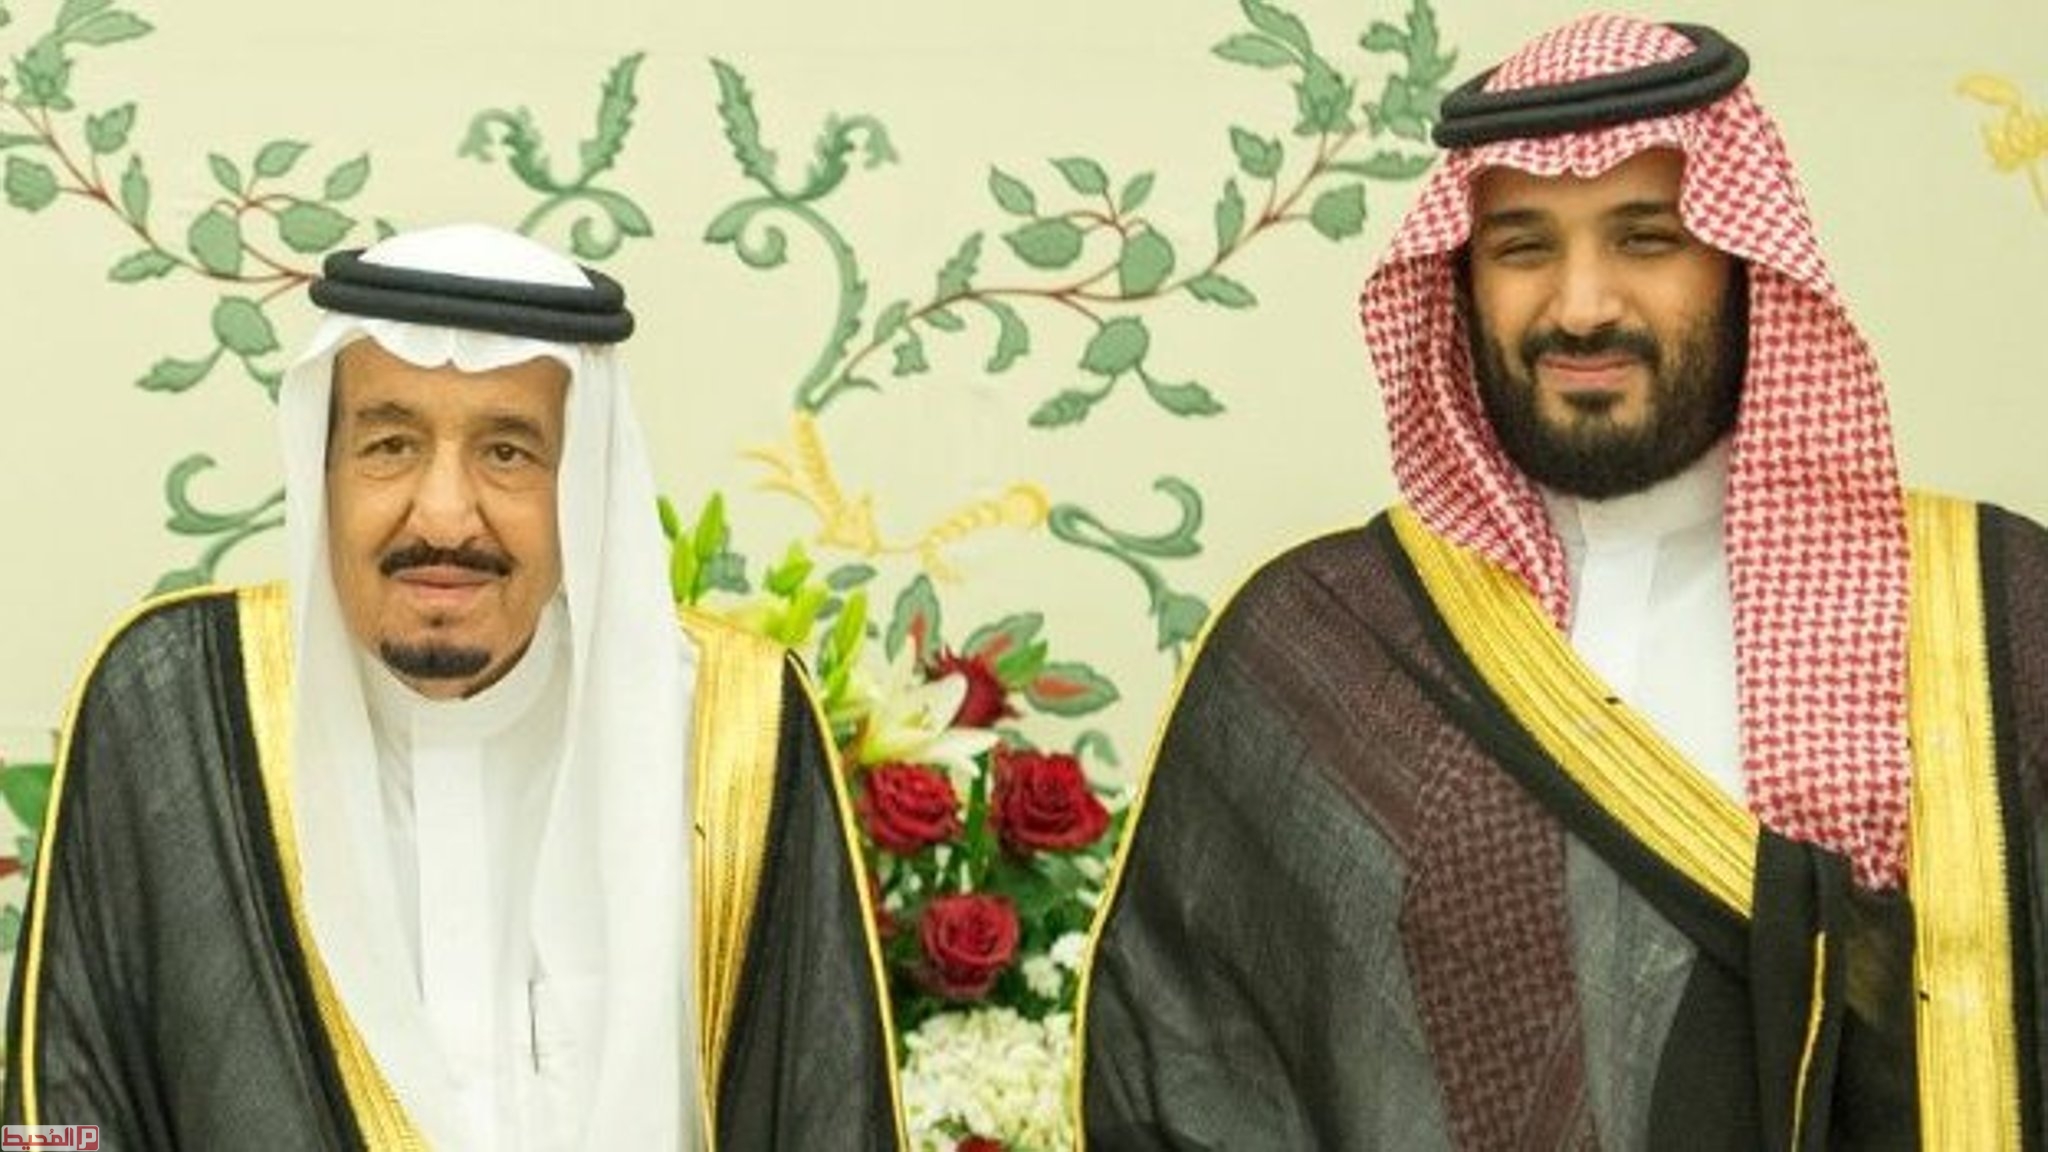 صور الملك سلمان ومحمد بن سلمان png - موقع محتويات